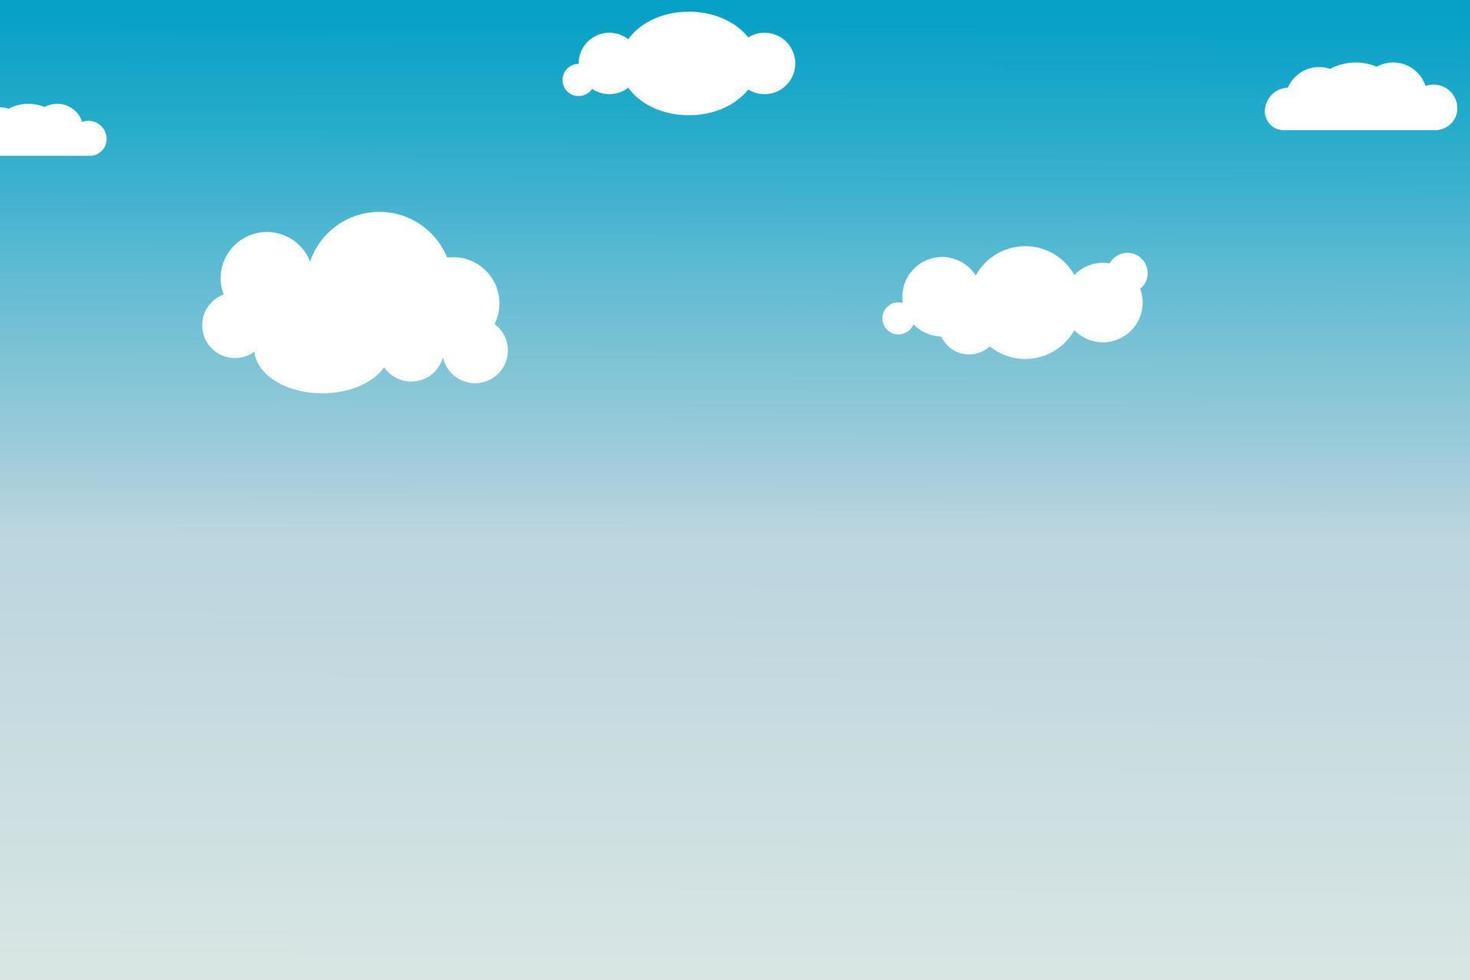 cielo azul con nubes ilustración de fondo vector